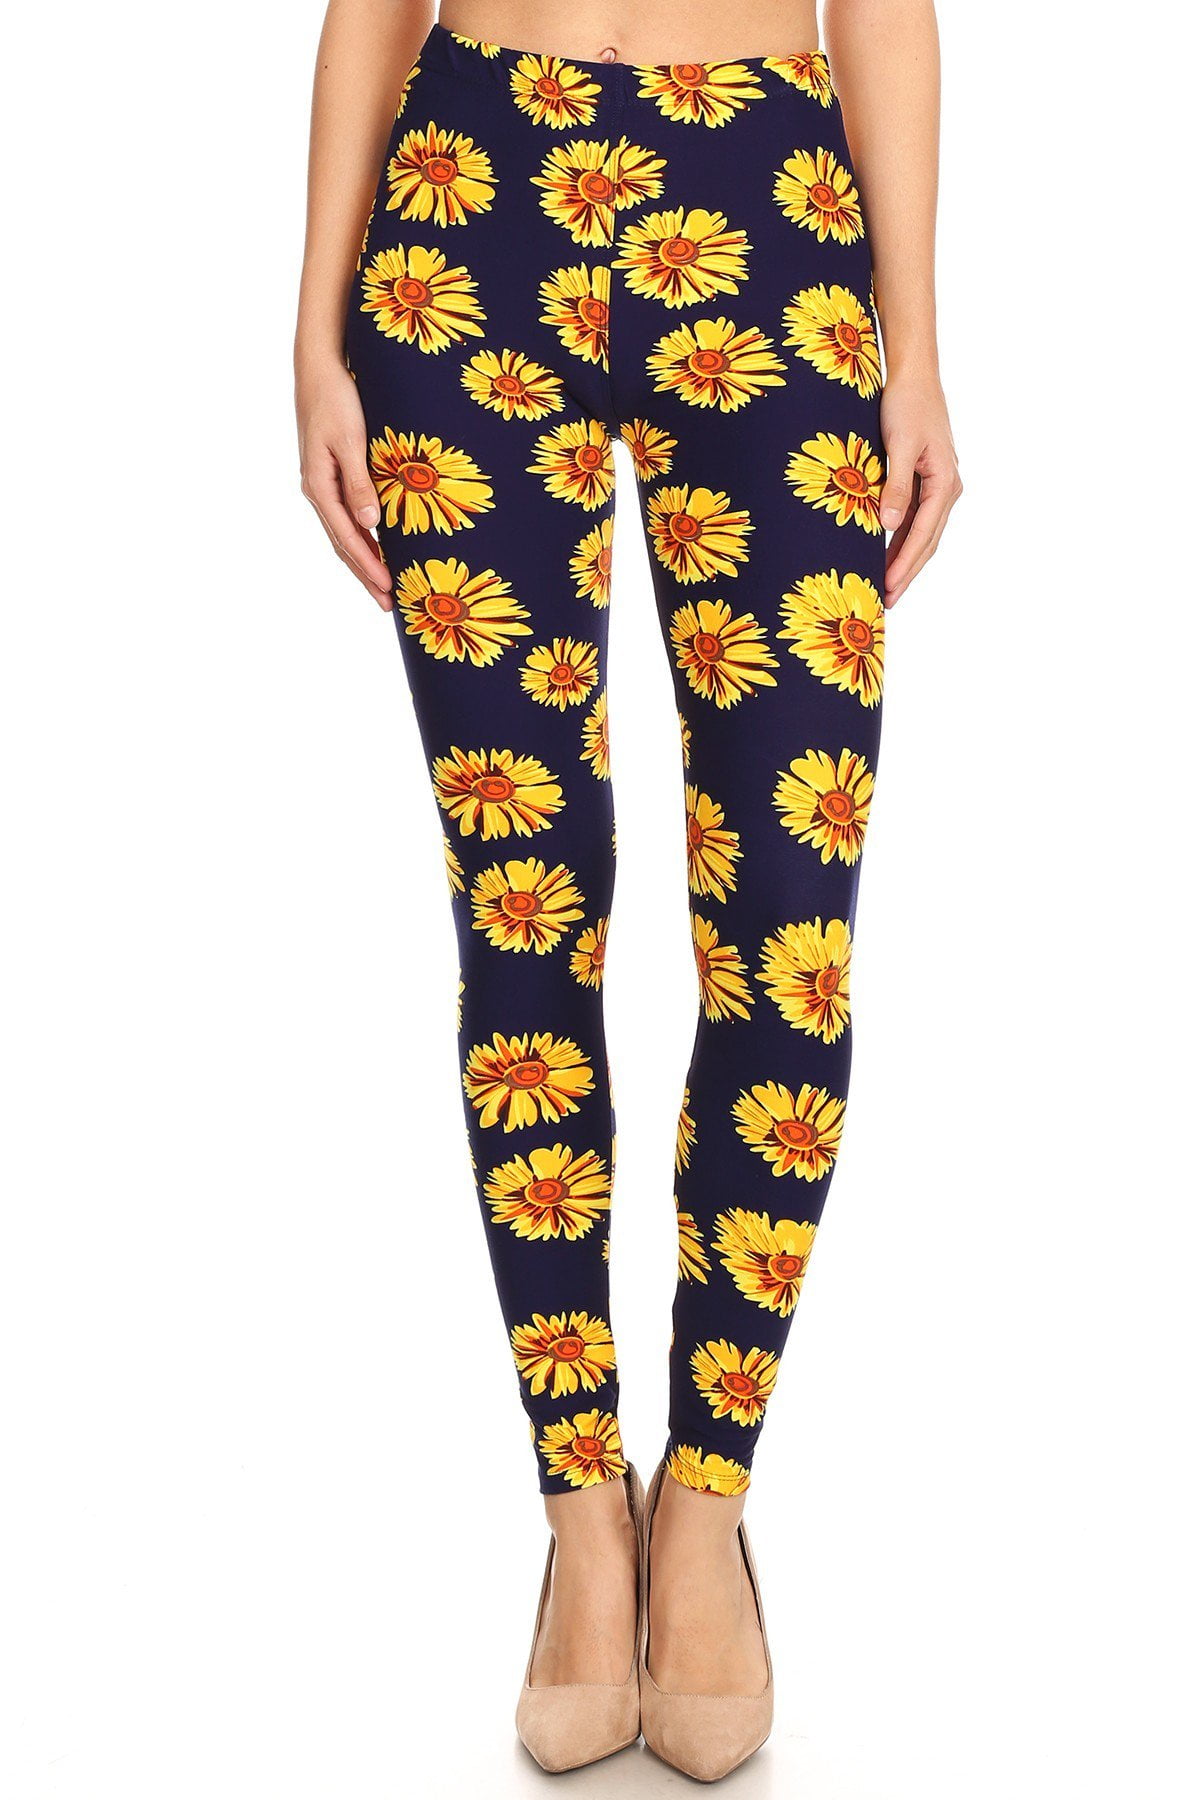 Women Sunflower Print Regular//Tall High Waisted Yoga Pants Indoor Workout Pants